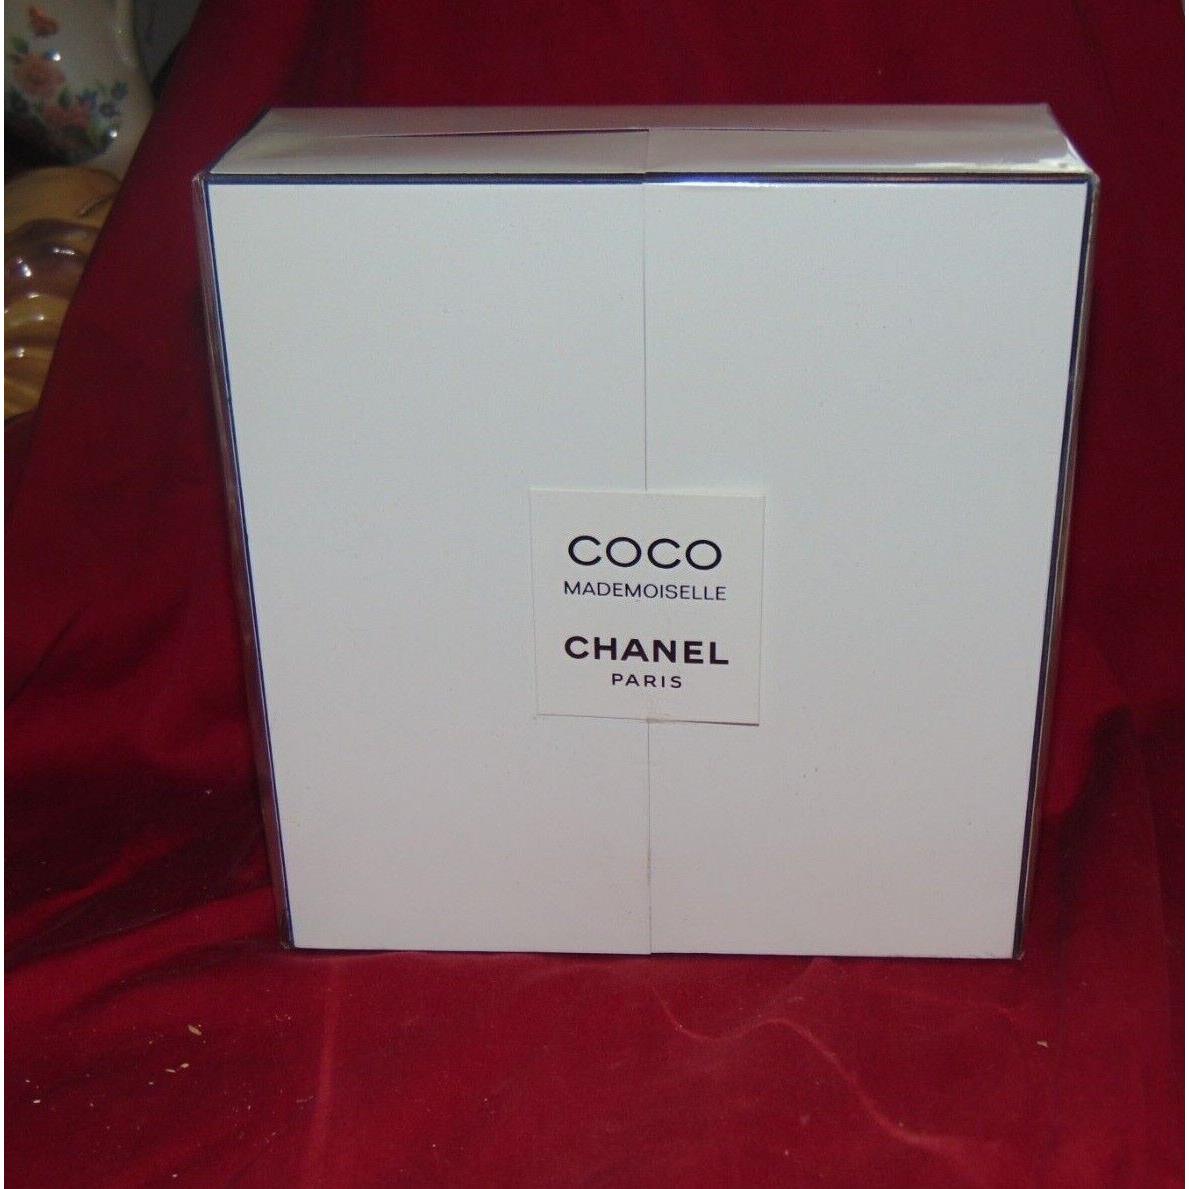 Chanel - COCO MADEMOISELLE - Les Essentiels Pour La Soirée Essentials For  The Evening - Luxury Fragrances - Avvenice